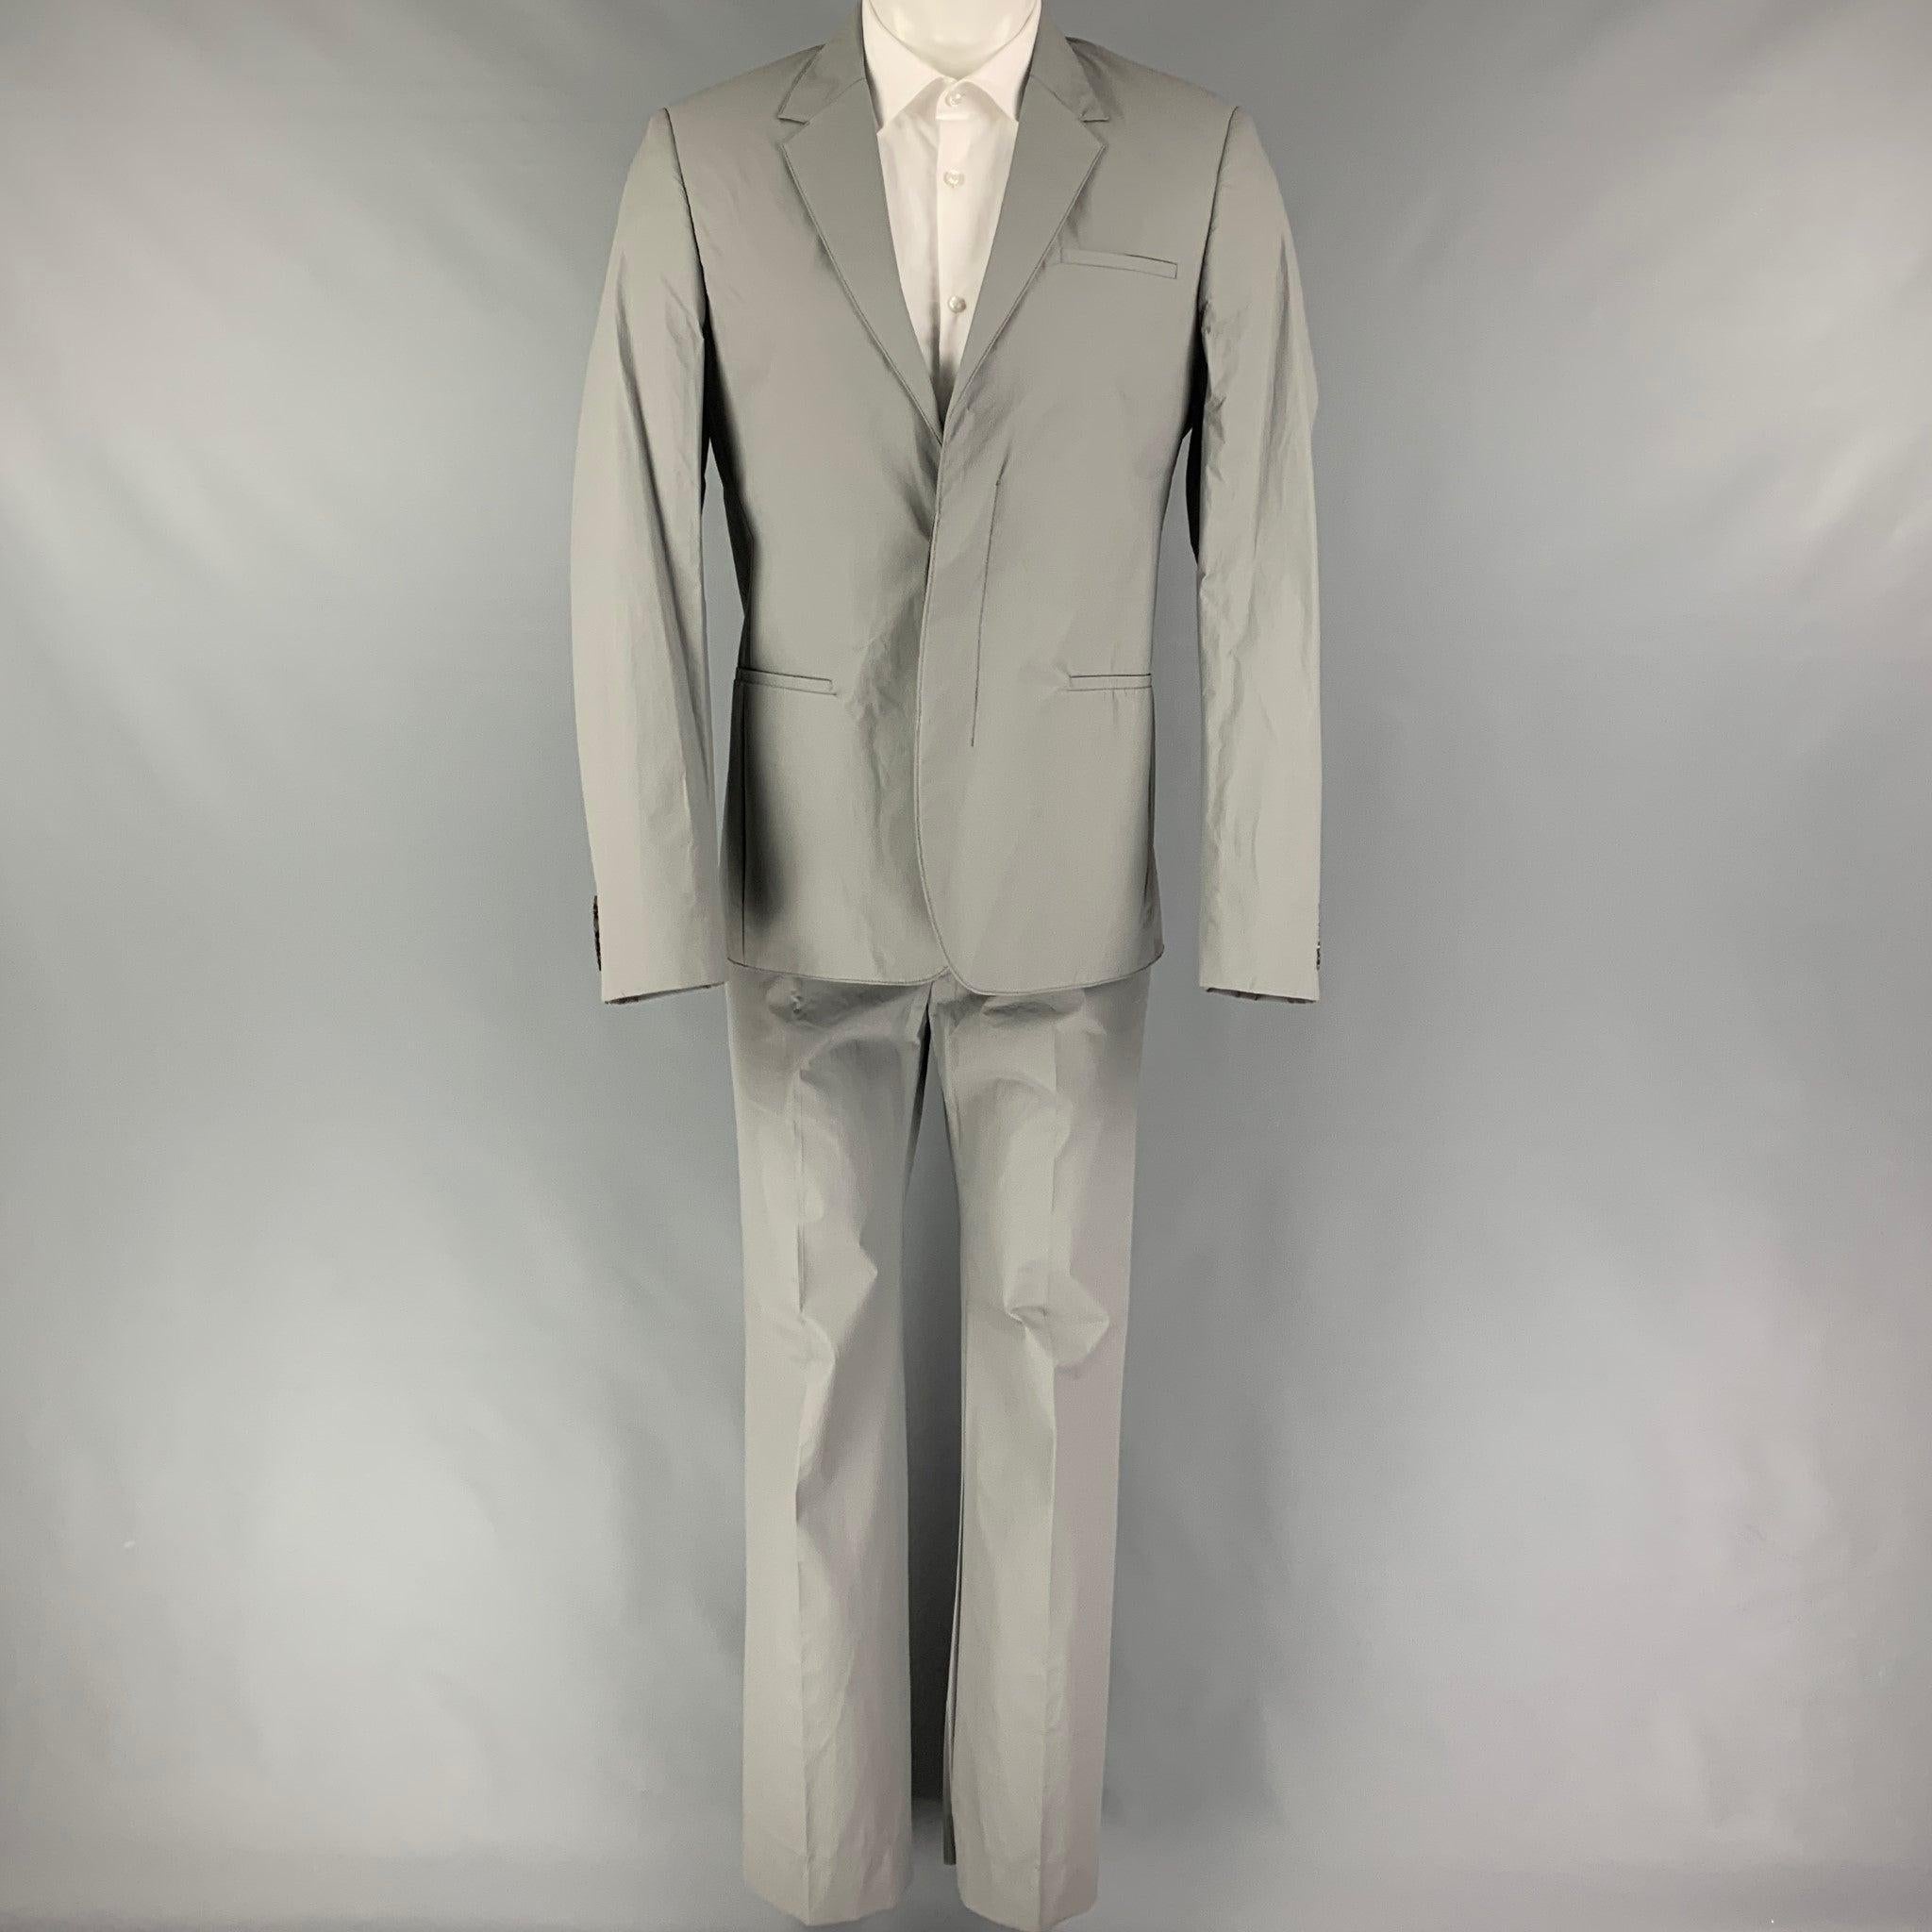 COLLECTION CALVIN S
Le costume est en polyuréthane/polyester gris avec une doublure complète et comprend un manteau de sport à double boutonnage avec un revers à cran et un pantalon à devant plat assorti. Fabriquées en Italie. Nouveau avec des